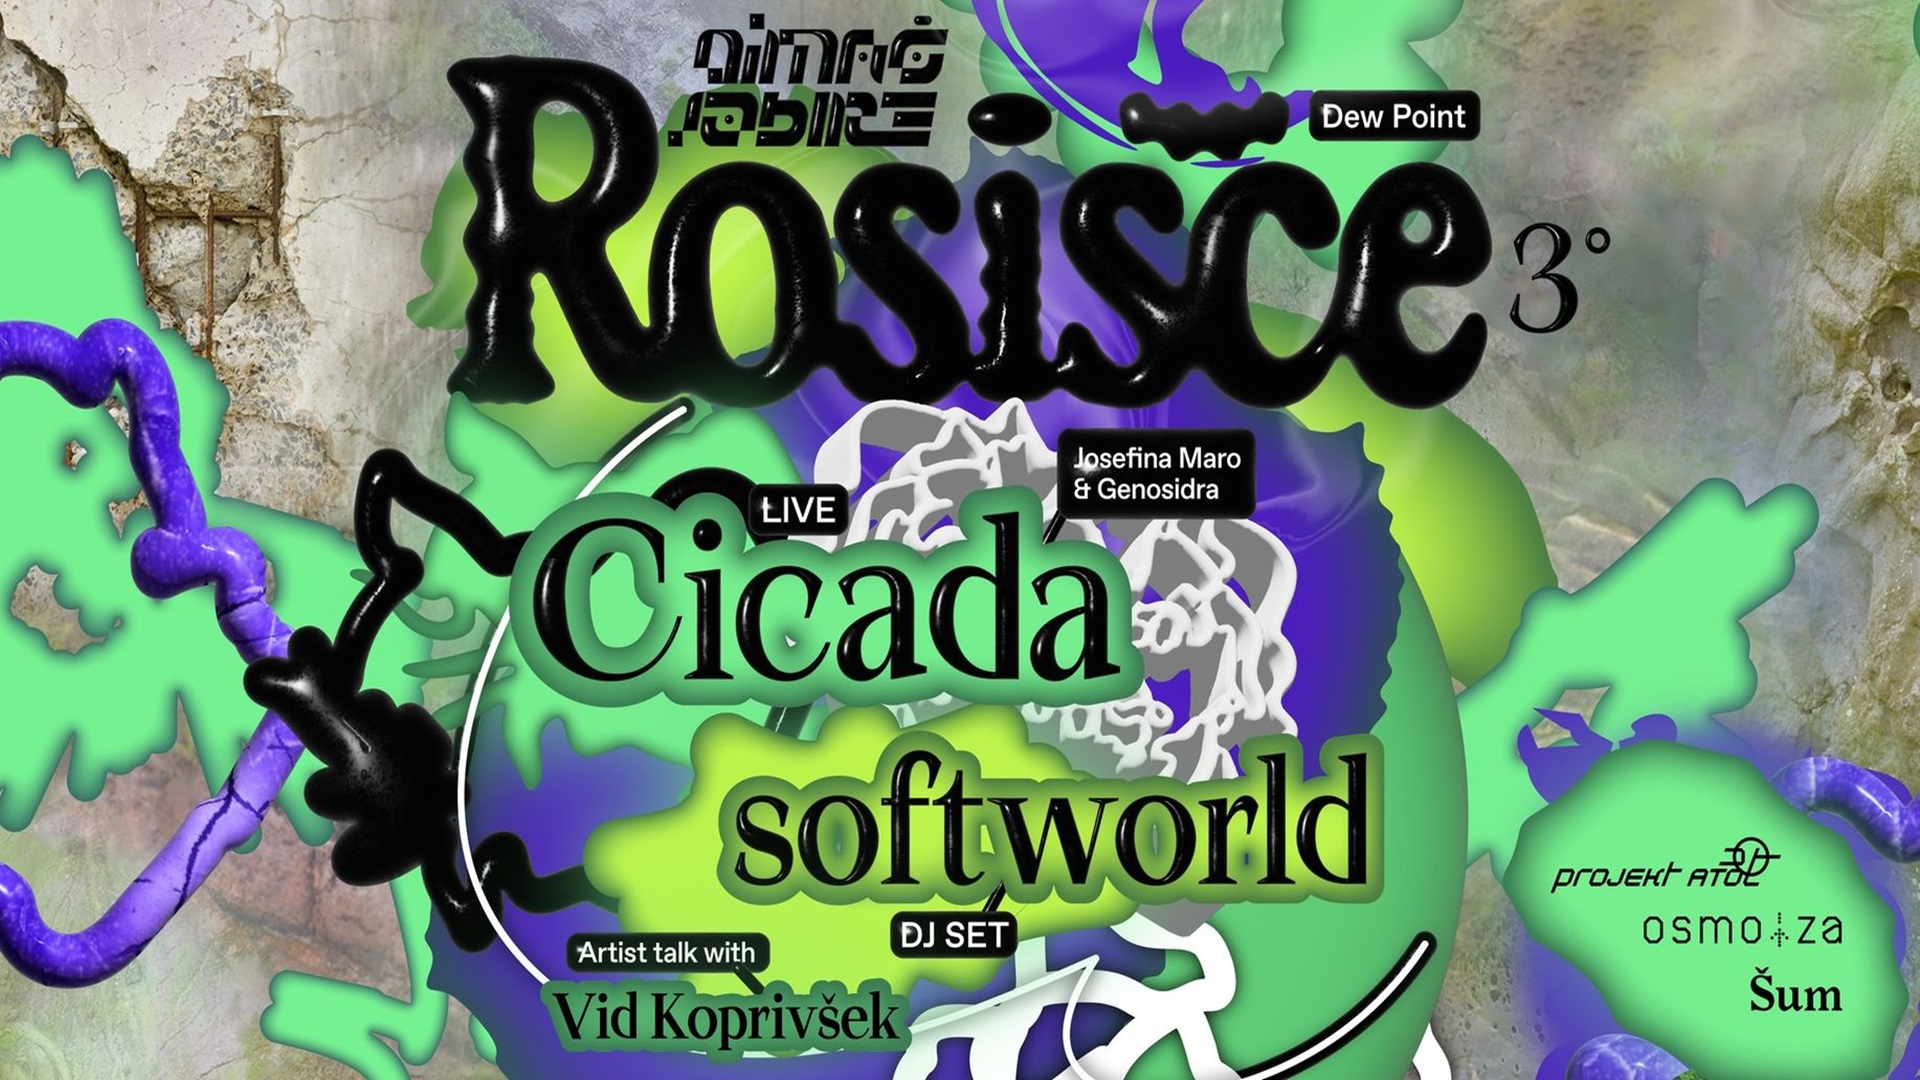 Rosišče °3: Cicada (AR/CO) & softworld (DE)